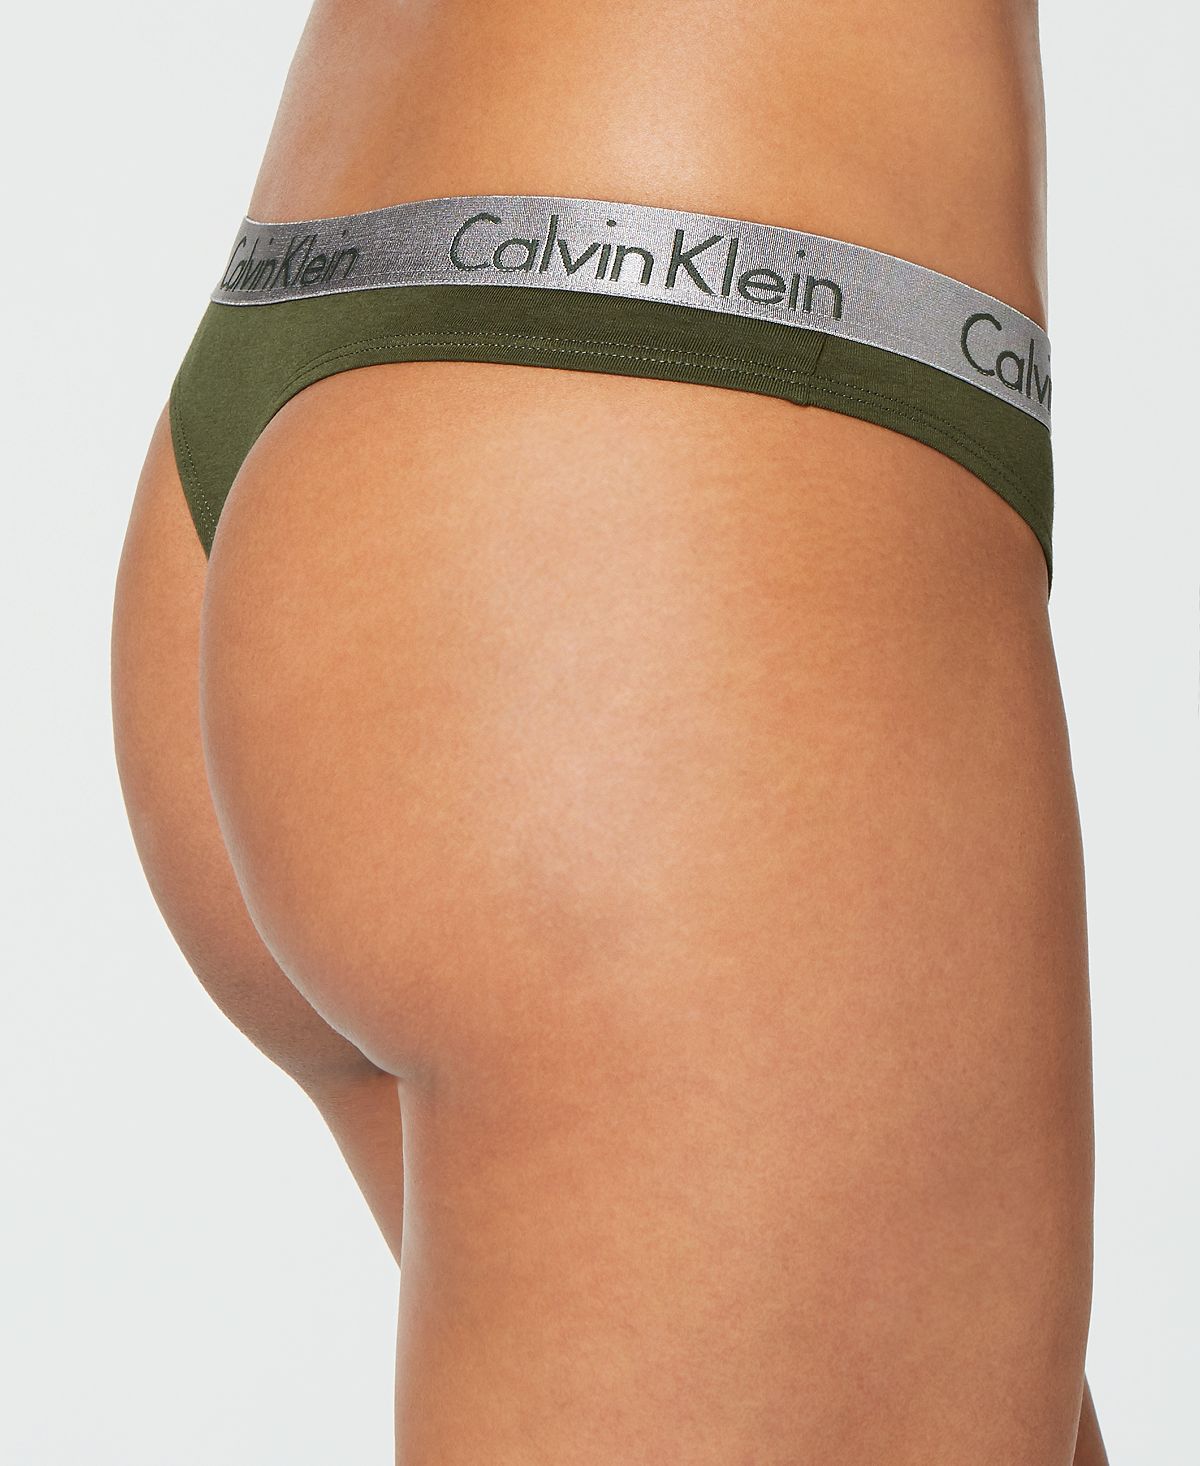 Calvin Klein Radiant Cotton Thong Qd3539 Duffel Bag